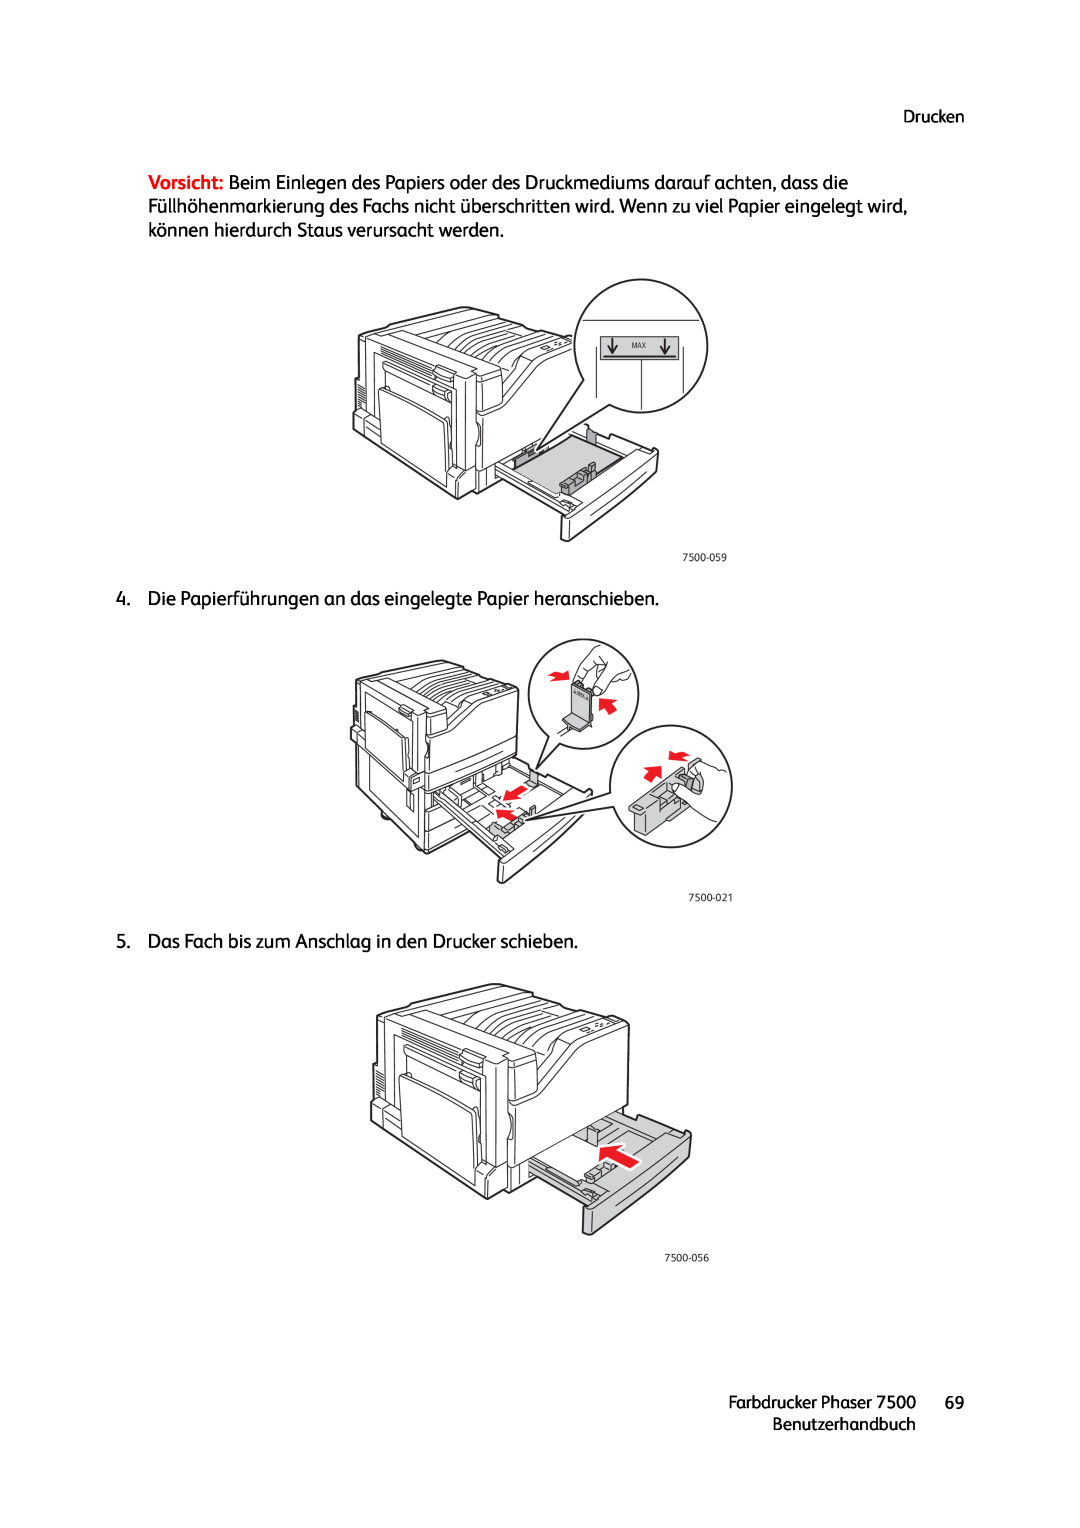 Xerox 7500 color printer manual Drucken, Benutzerhandbuch, Farbdrucker Phaser 